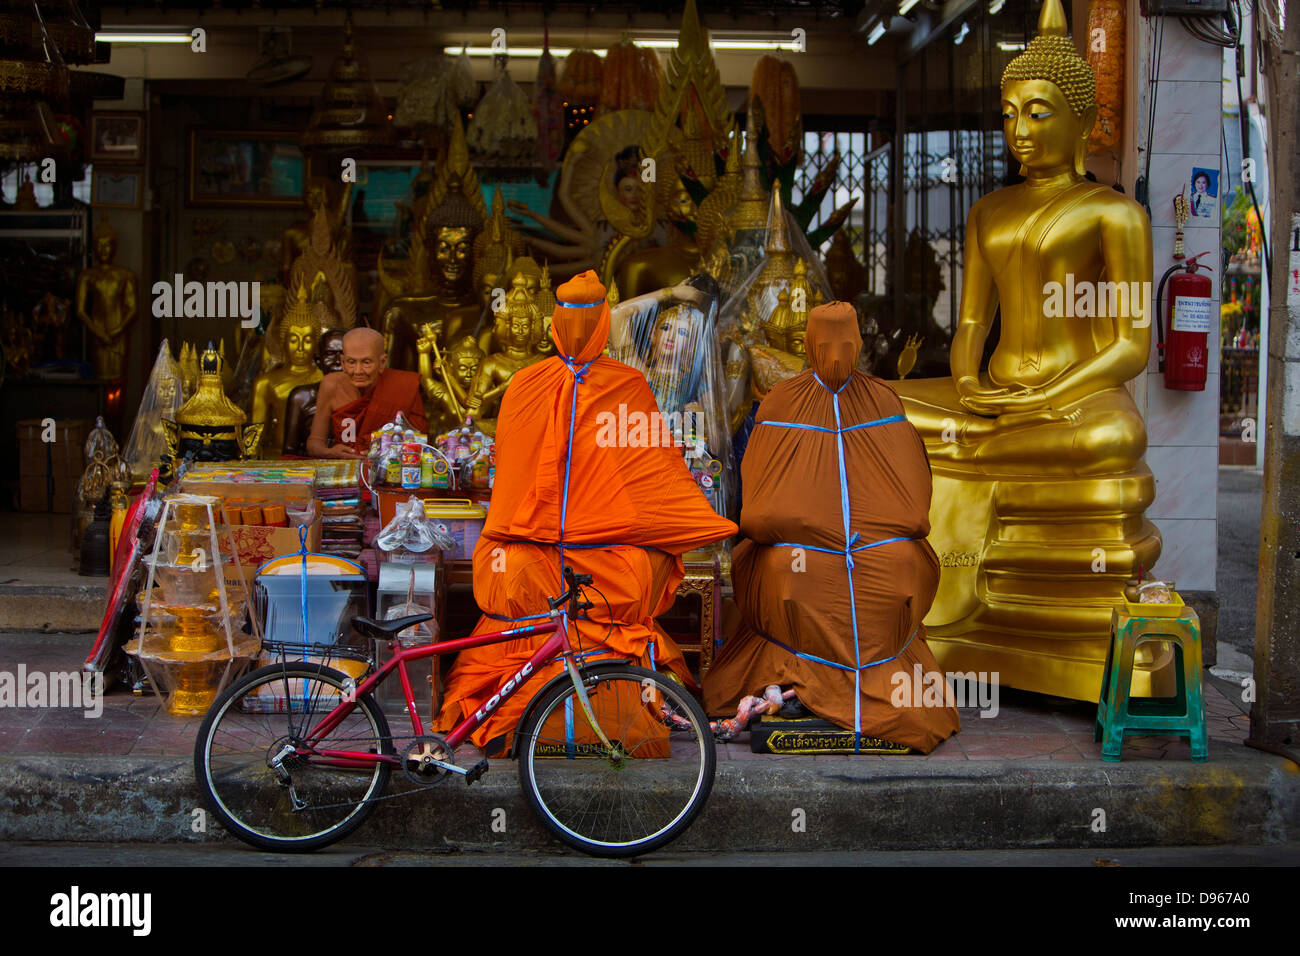 Des statues de cire de figures bouddhiques vénérées à vendre, Bangkok, Thaïlande Banque D'Images